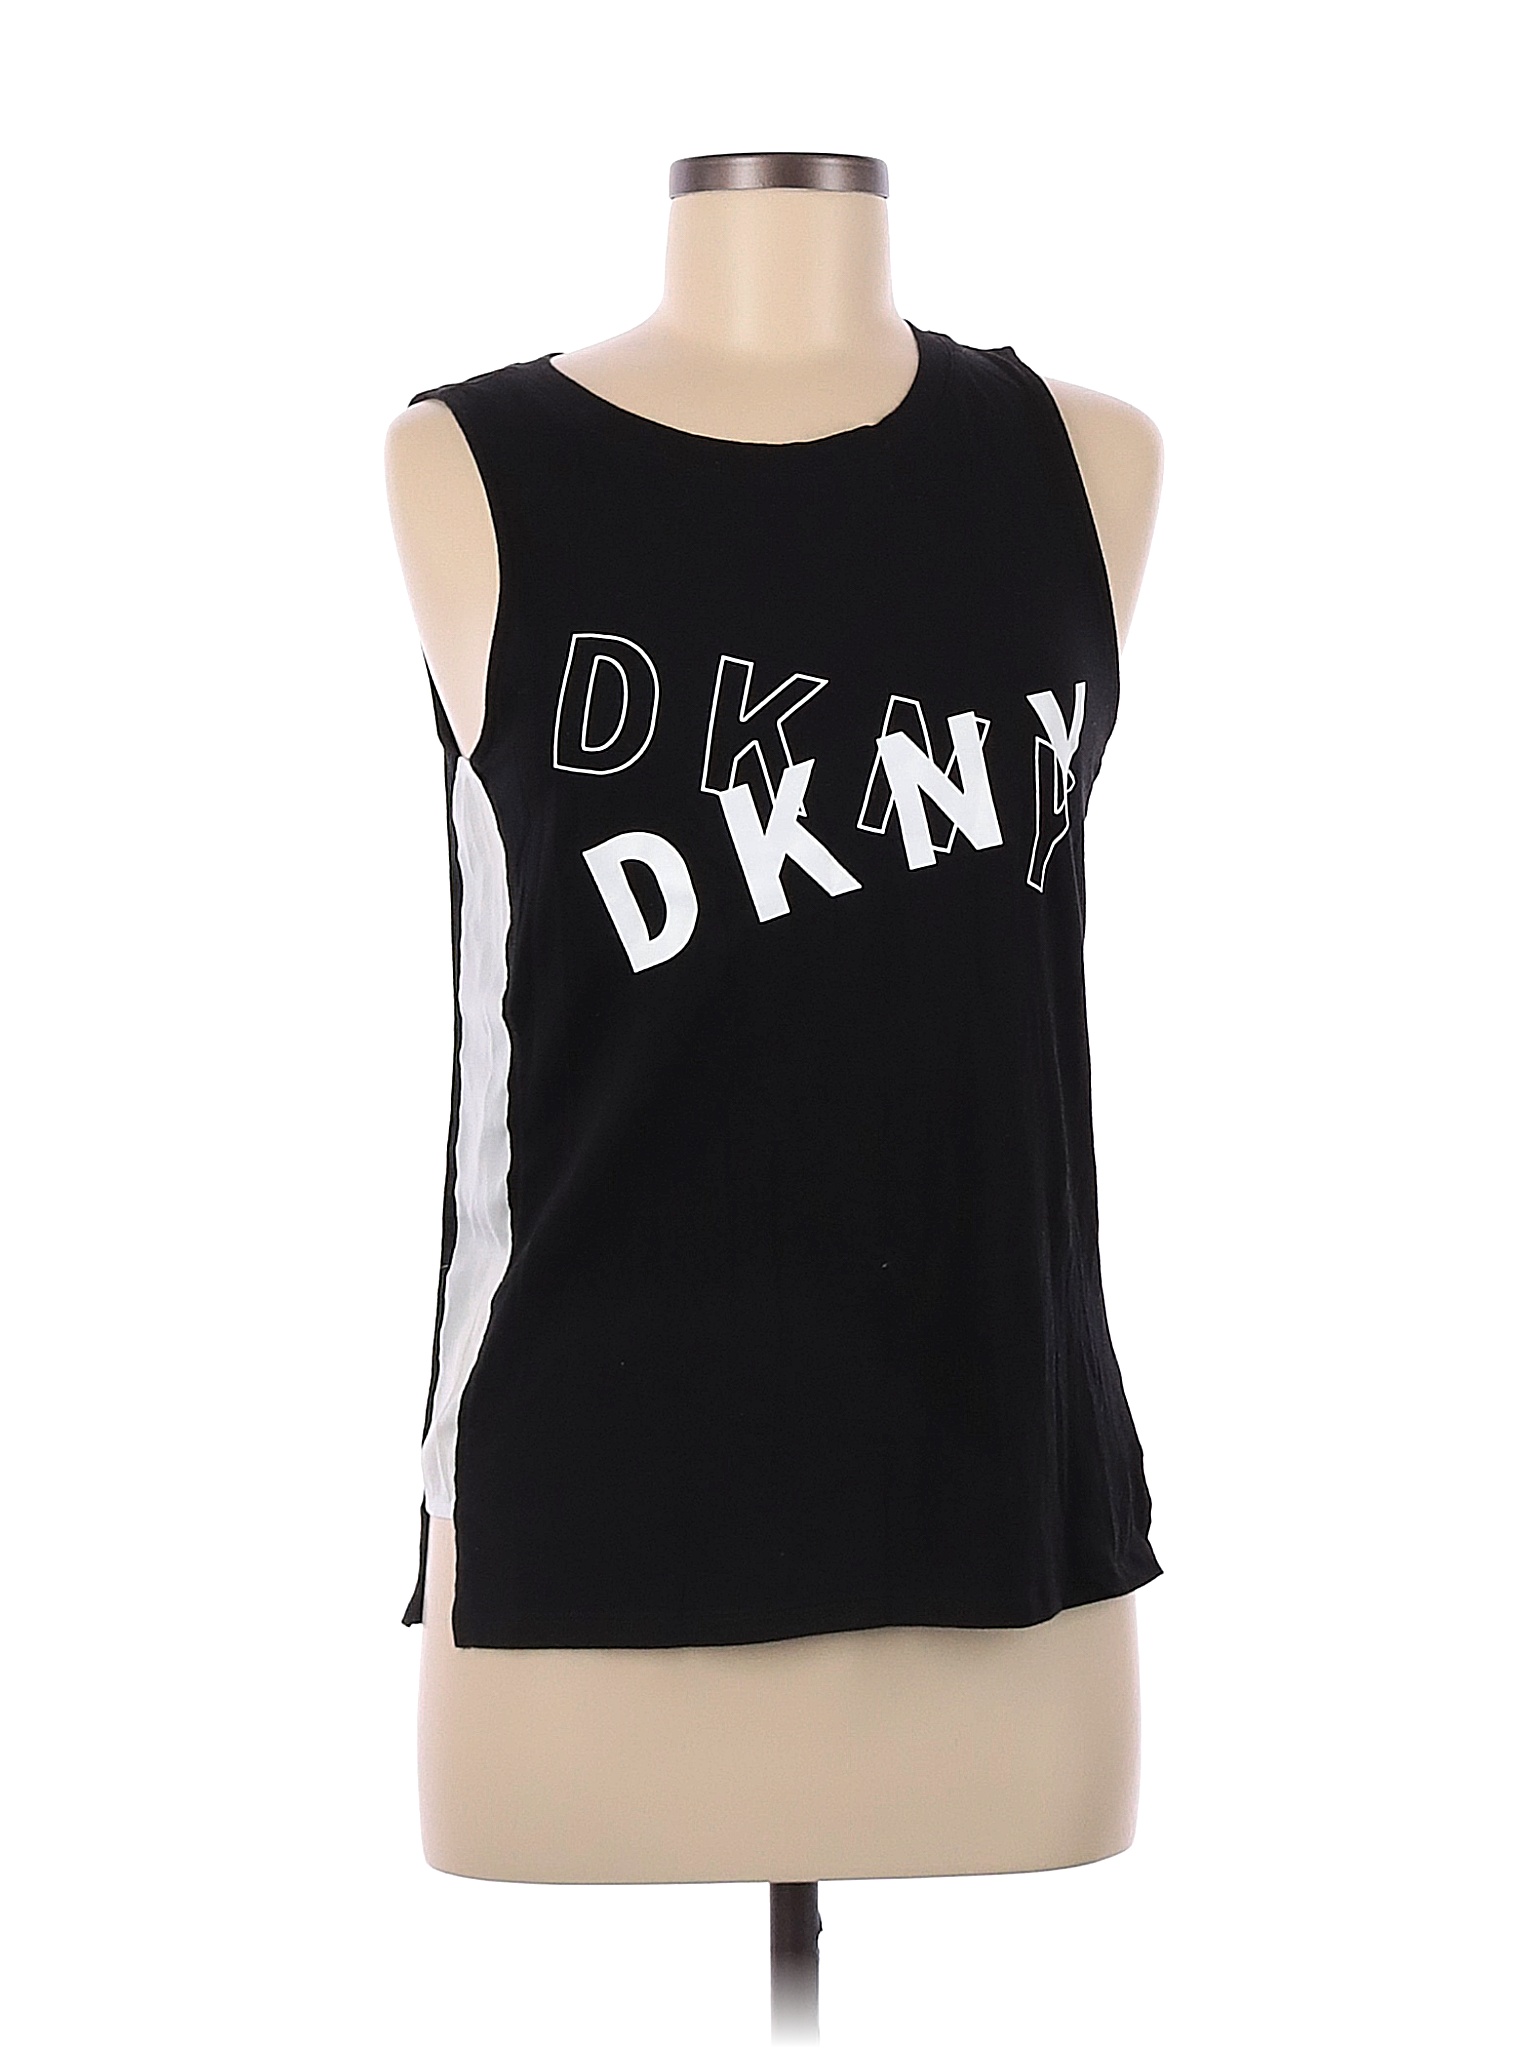 DKNY Womens Tank Tops - Walmart.com